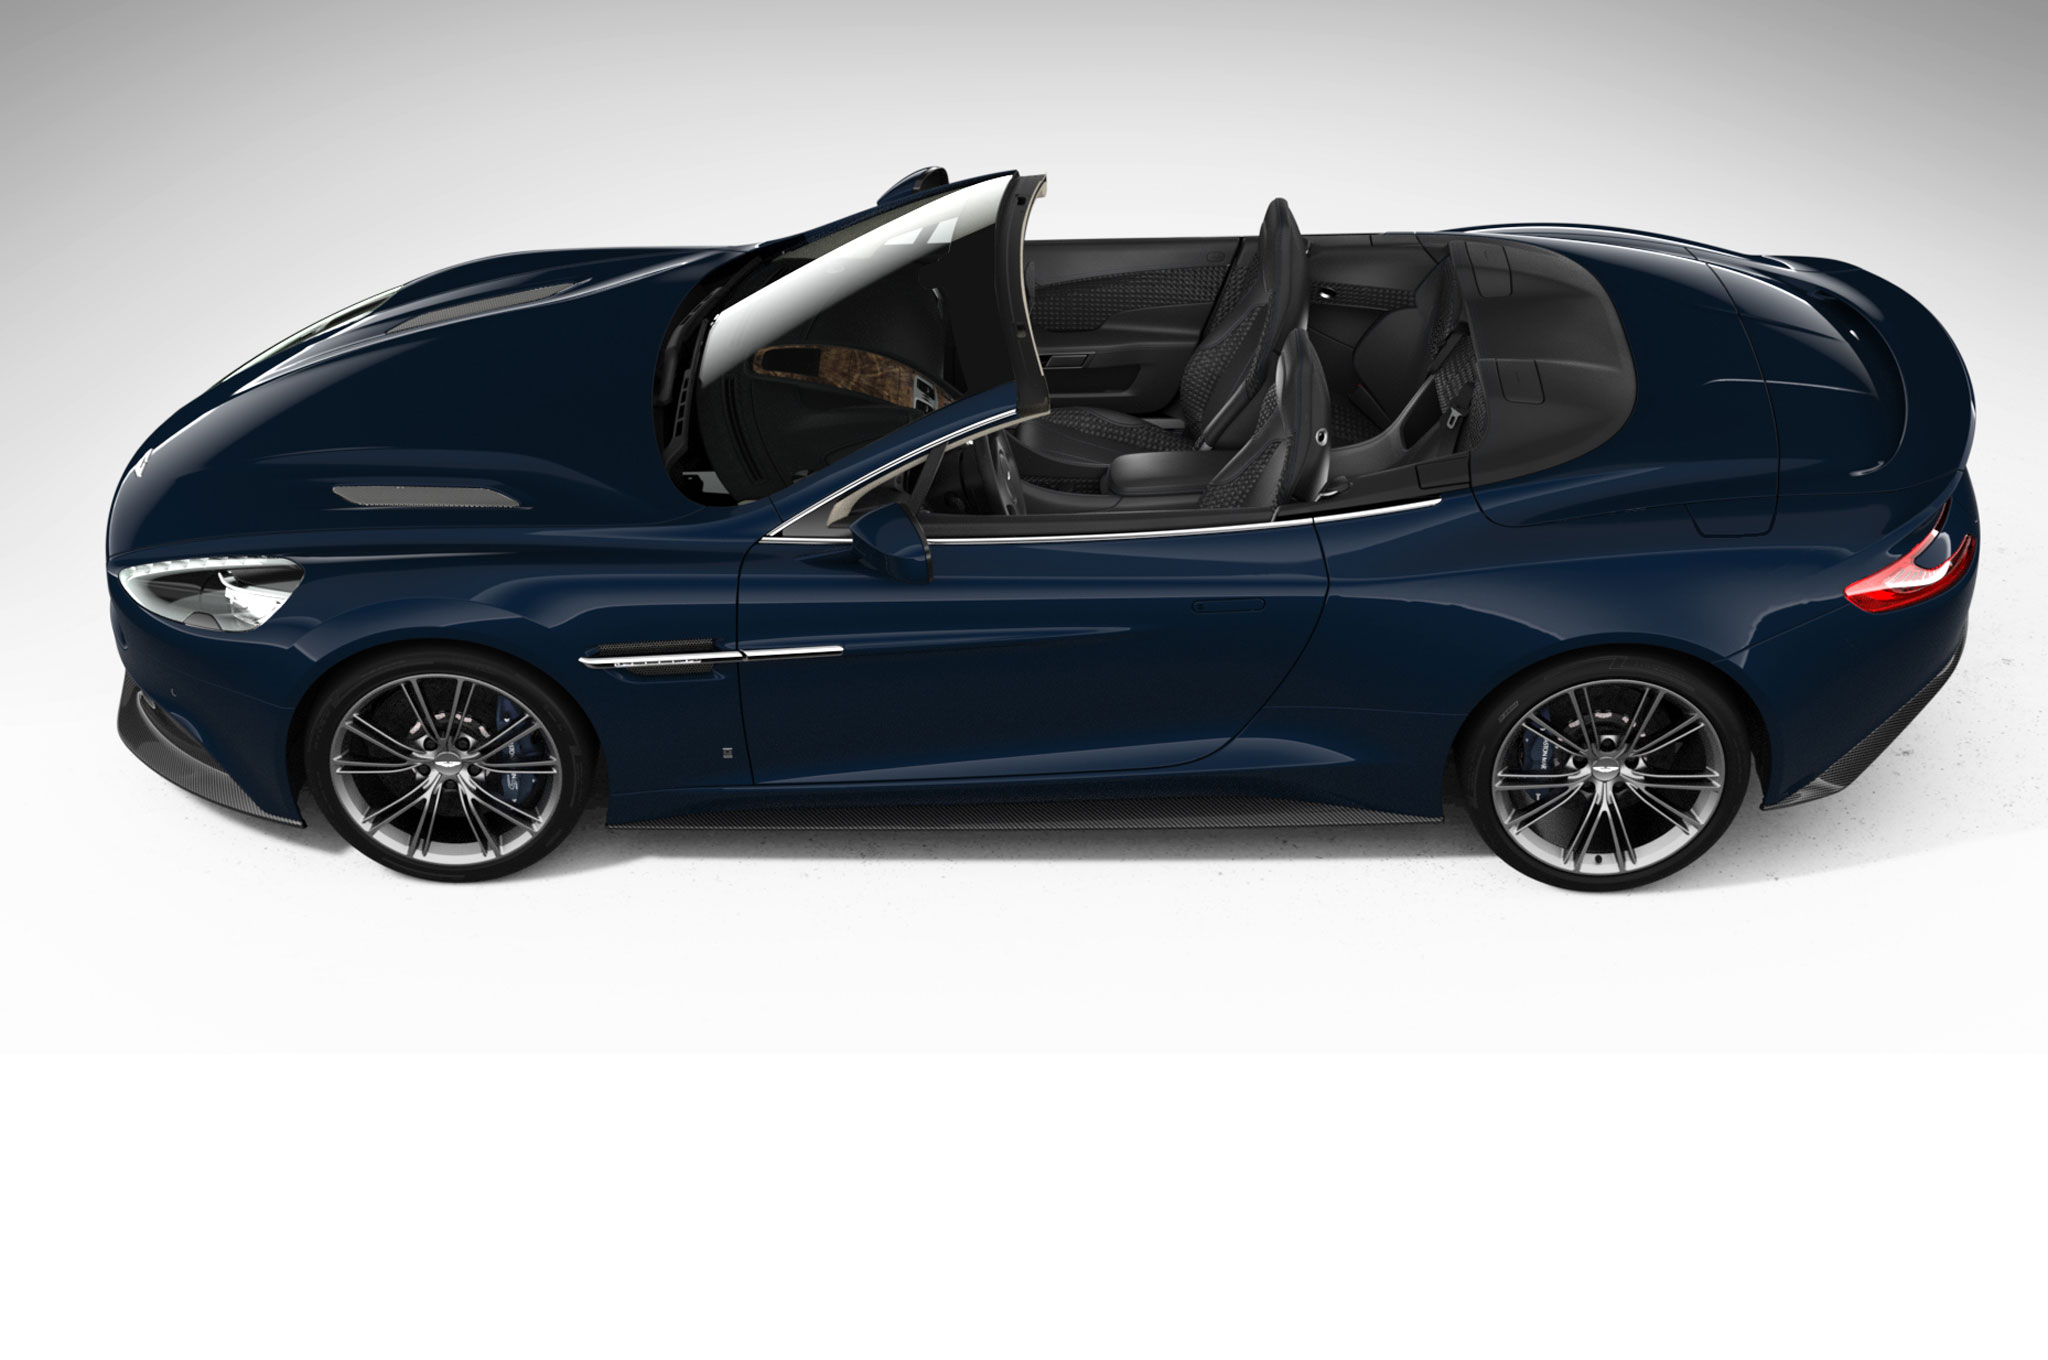 2014 Aston Martin Neiman Marcus Edition